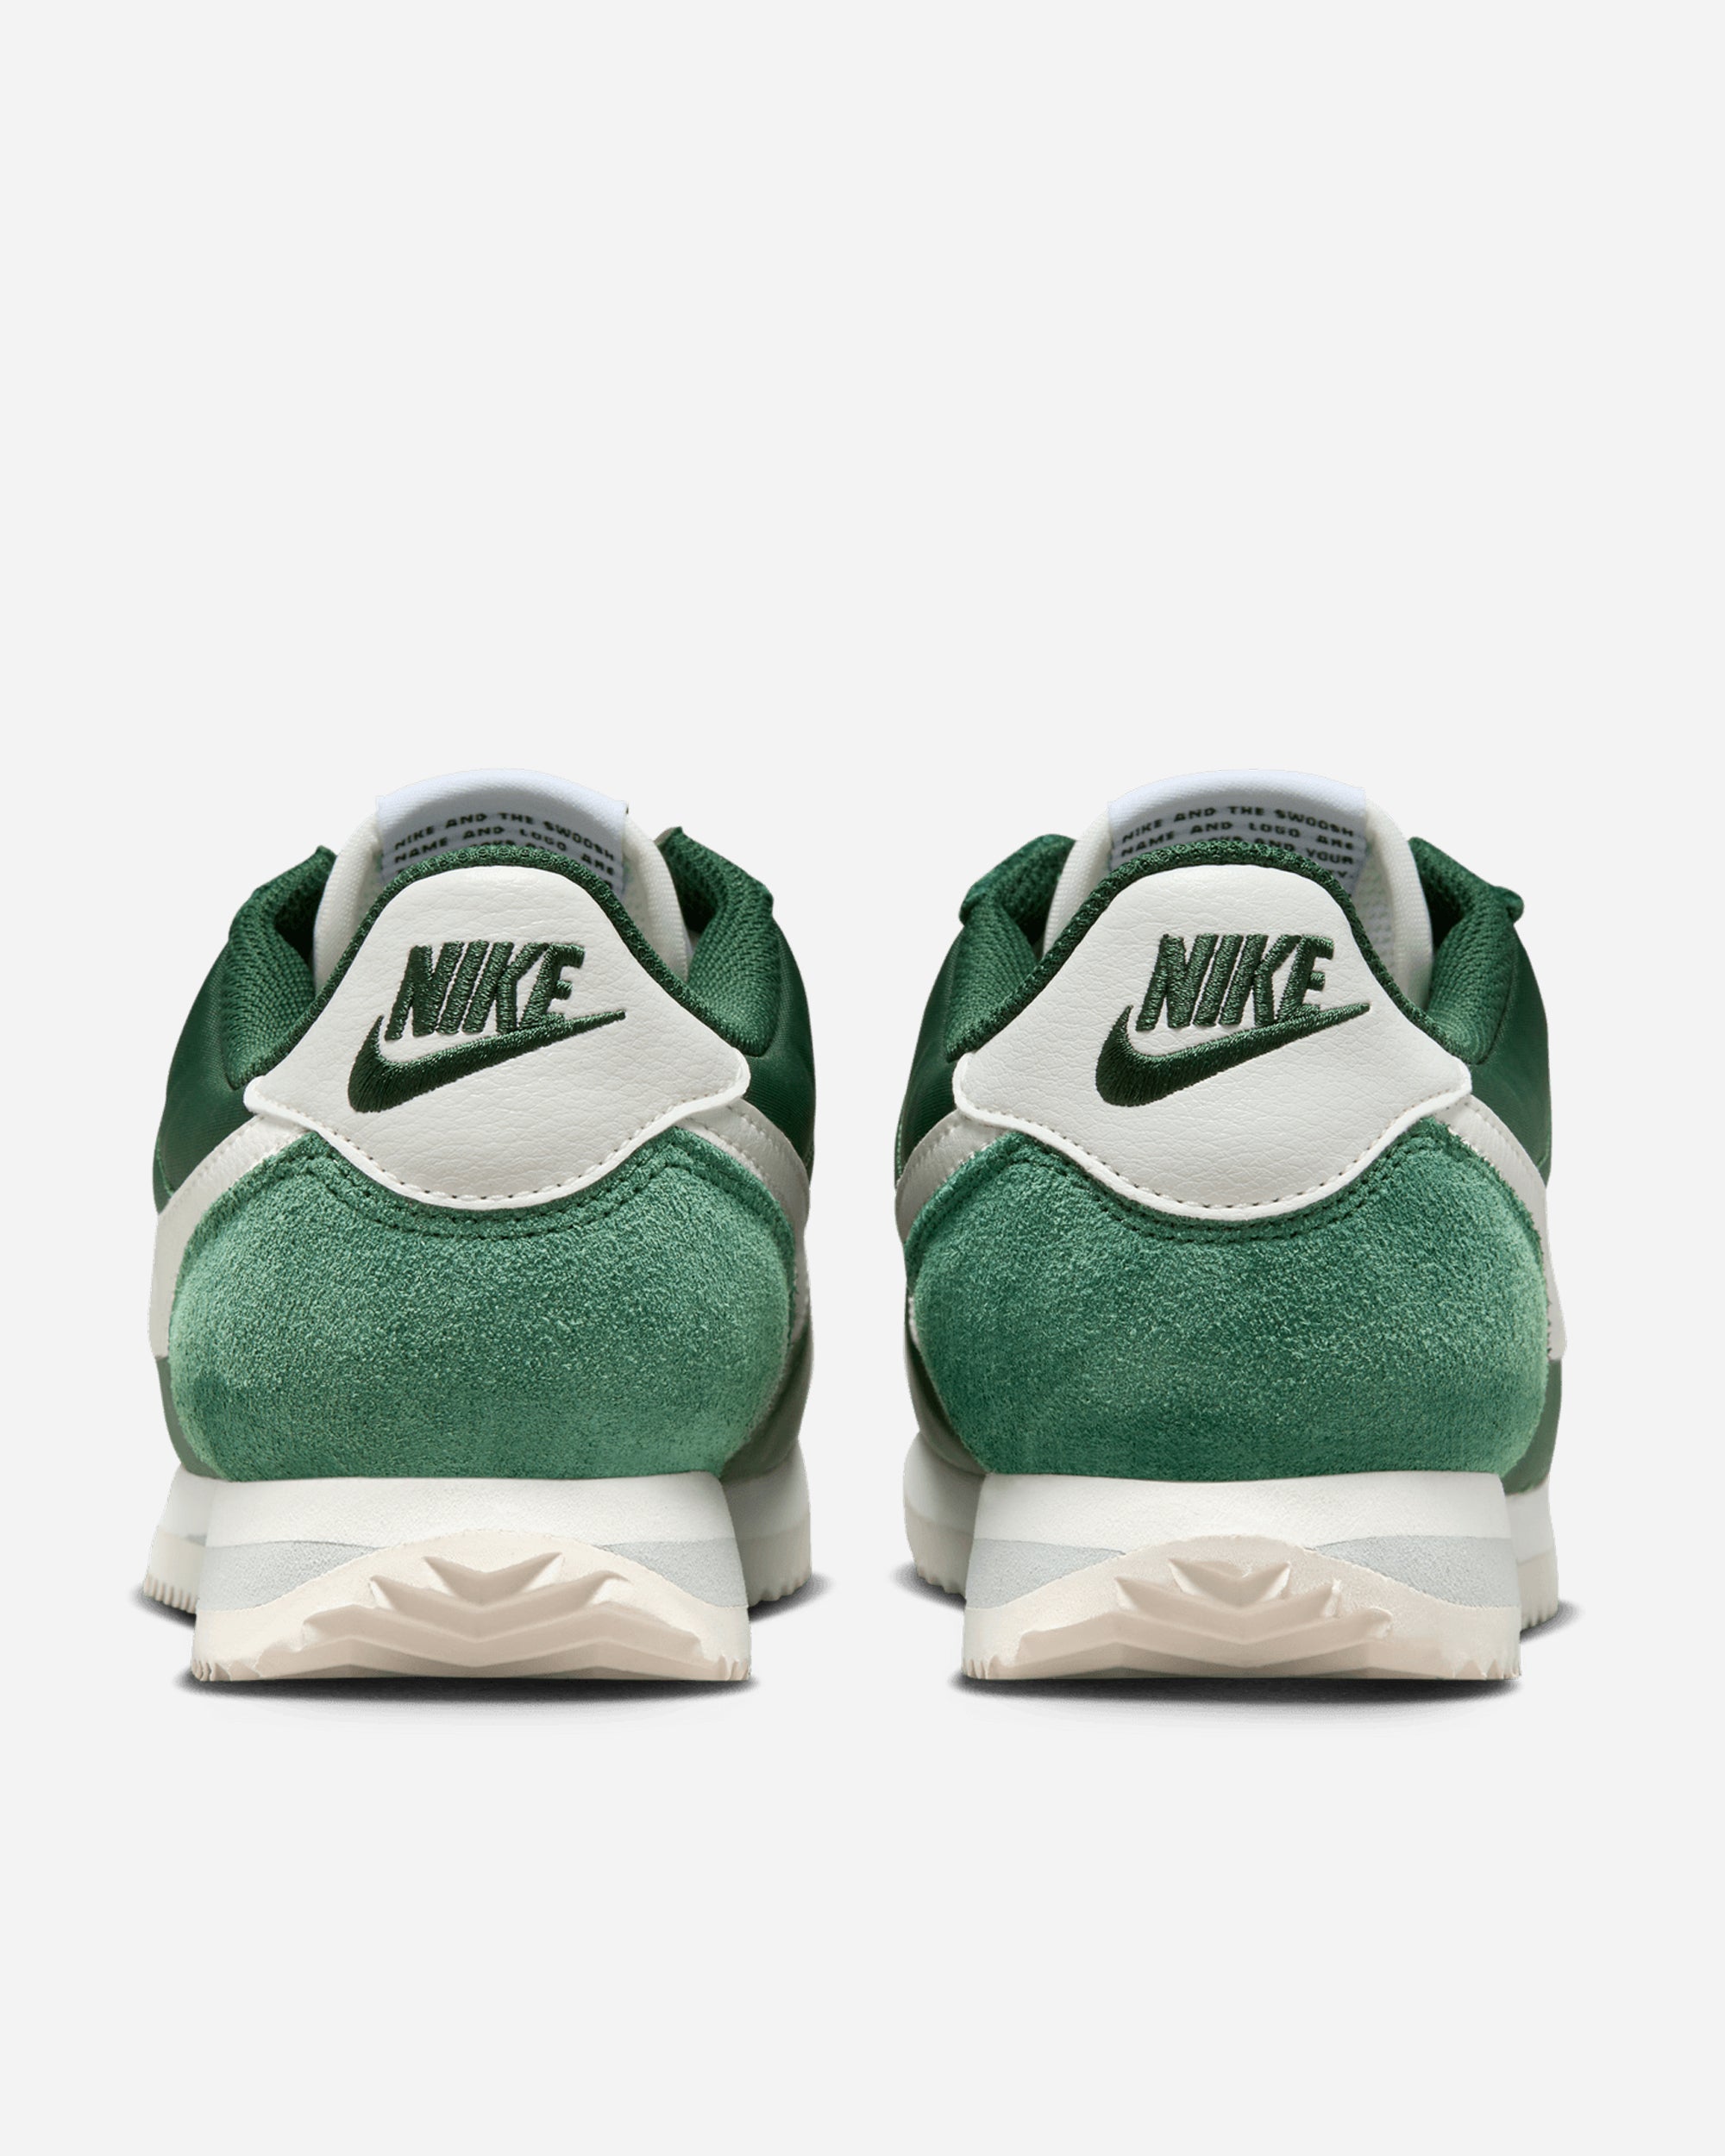 Nike Cortez 'Fir Green' FIR/SAIL-SAIL-LIGHT SILVER DZ2795-300